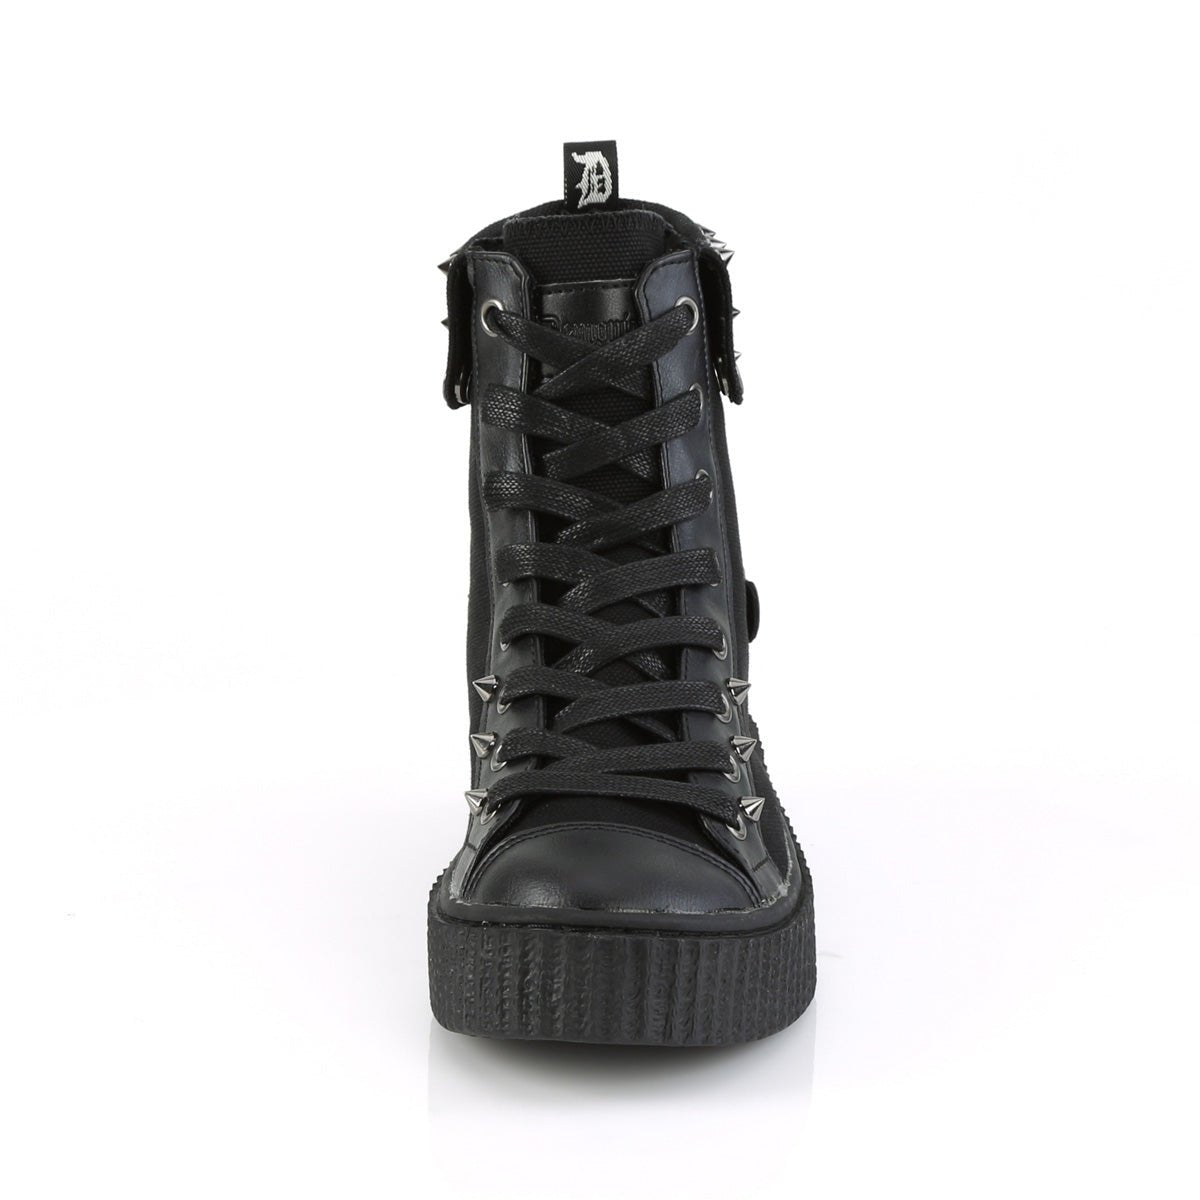 Too Fast | Demonia Sneeker 266 | Black Canvas & Vegan Leather Unisex Sneakers